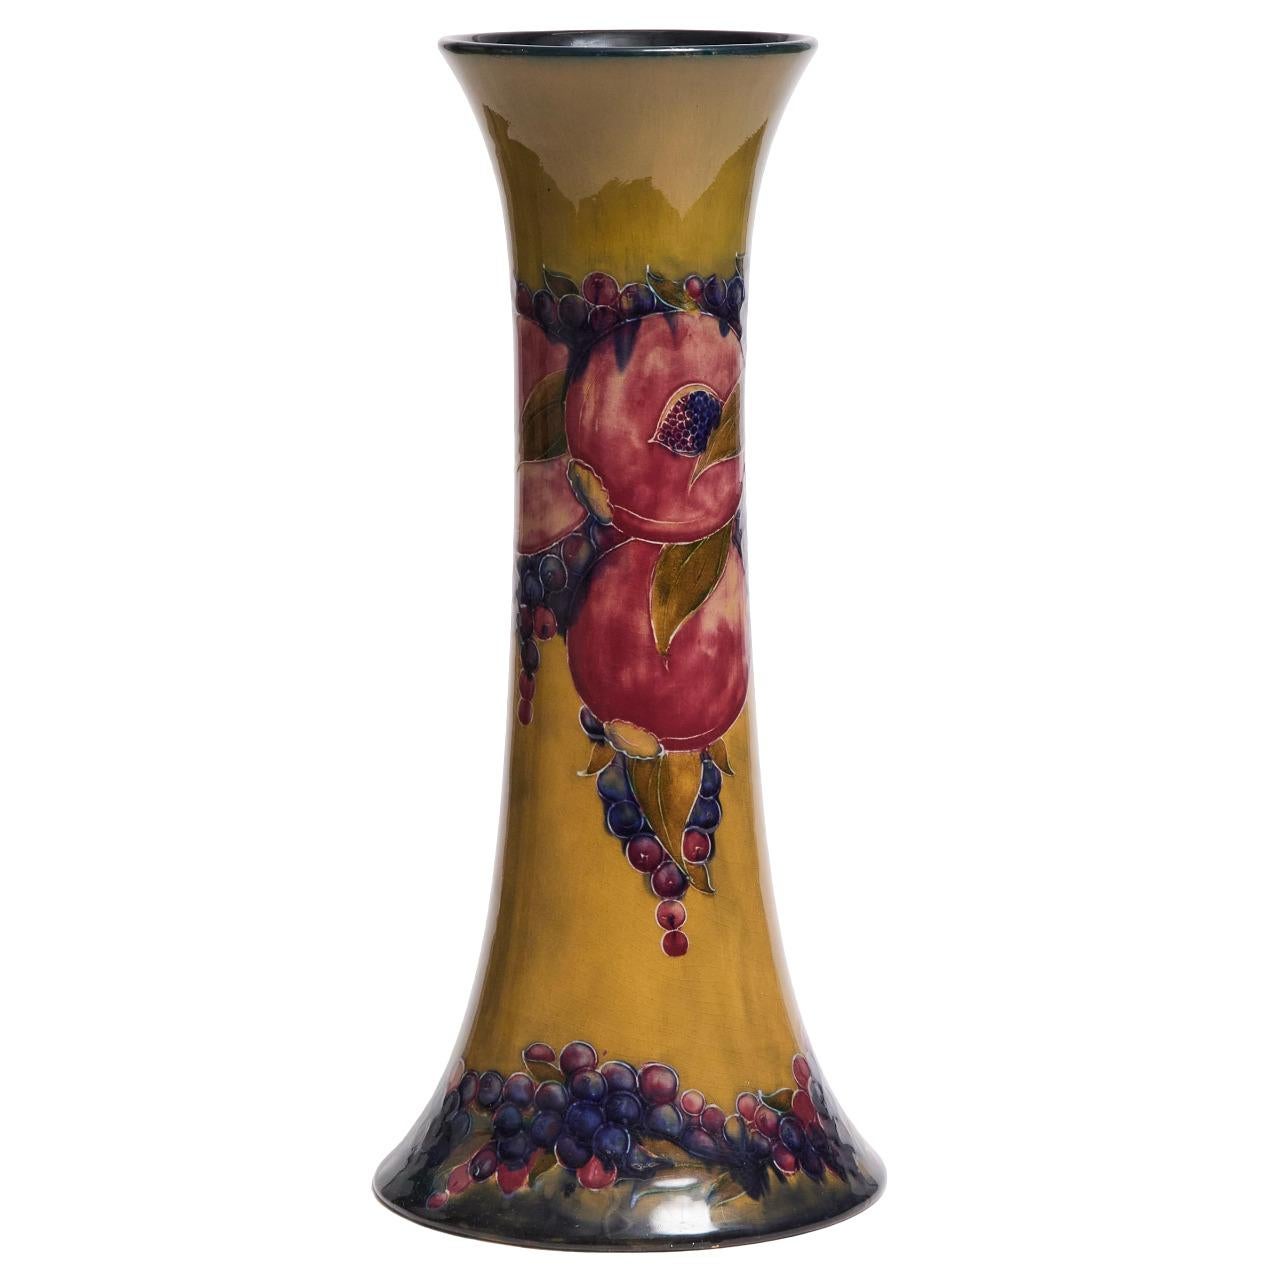 Ce vase exquis est orné d'un superbe motif de grenade datant d'environ 1916/1918. Avec un bord restauré et une hauteur de 39 cm, cette pièce ne manquera pas d'impressionner. Le vase porte la marque Burslem et une signature peinte en vert.
hauteur